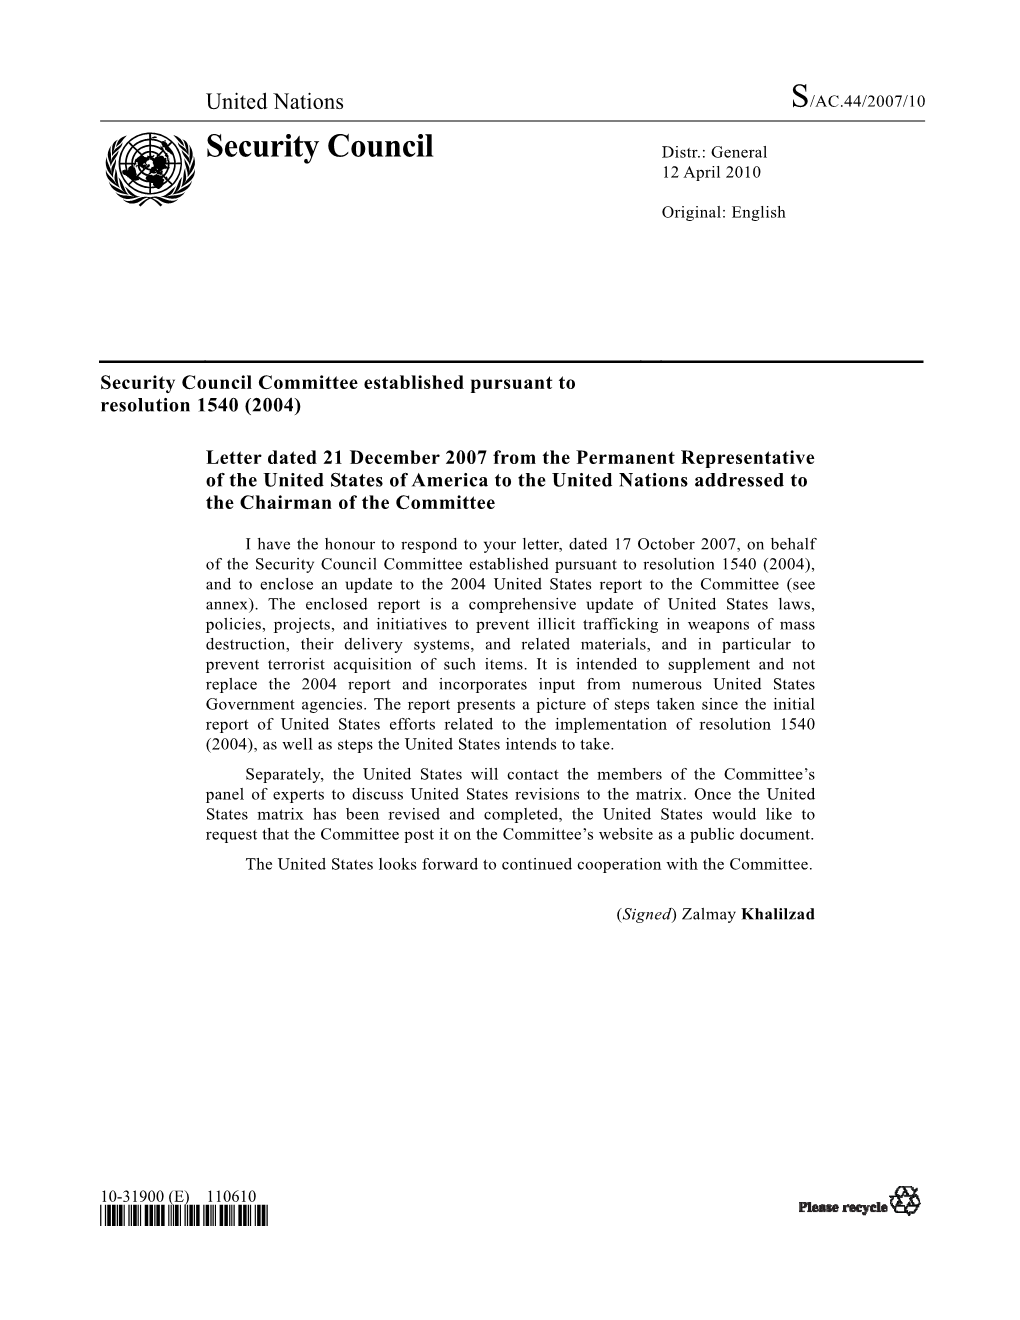 Security Council Distr.: General 12 April 2010